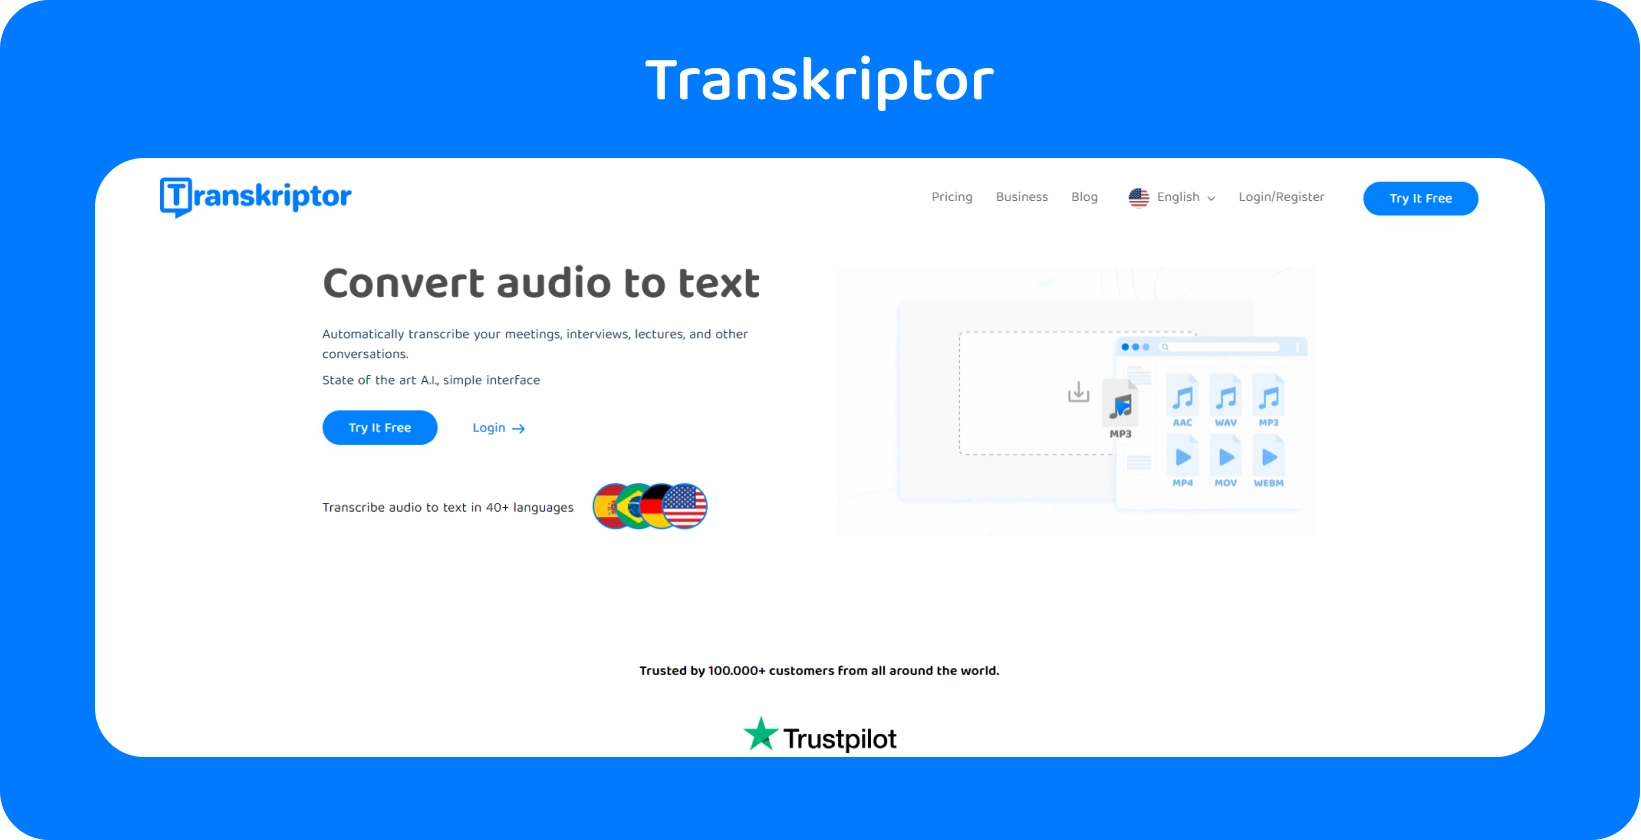 Візуальна метафора вибору сервісів транскрипції, орієнтованих на юристів, з інтерфейсом Transkriptor.